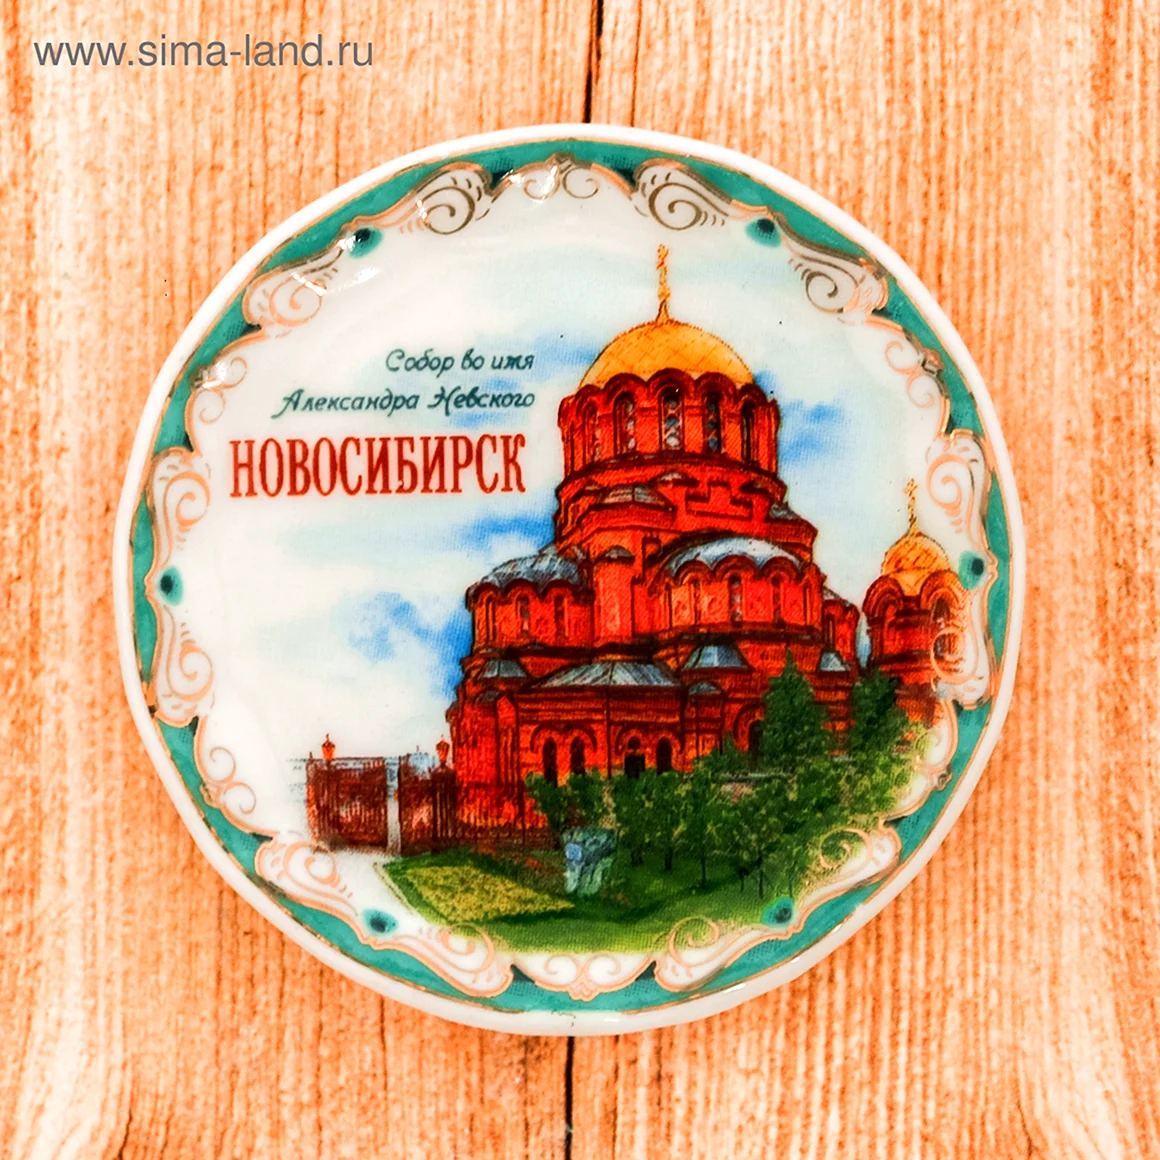 Сувенирная тарелка Новосибирск